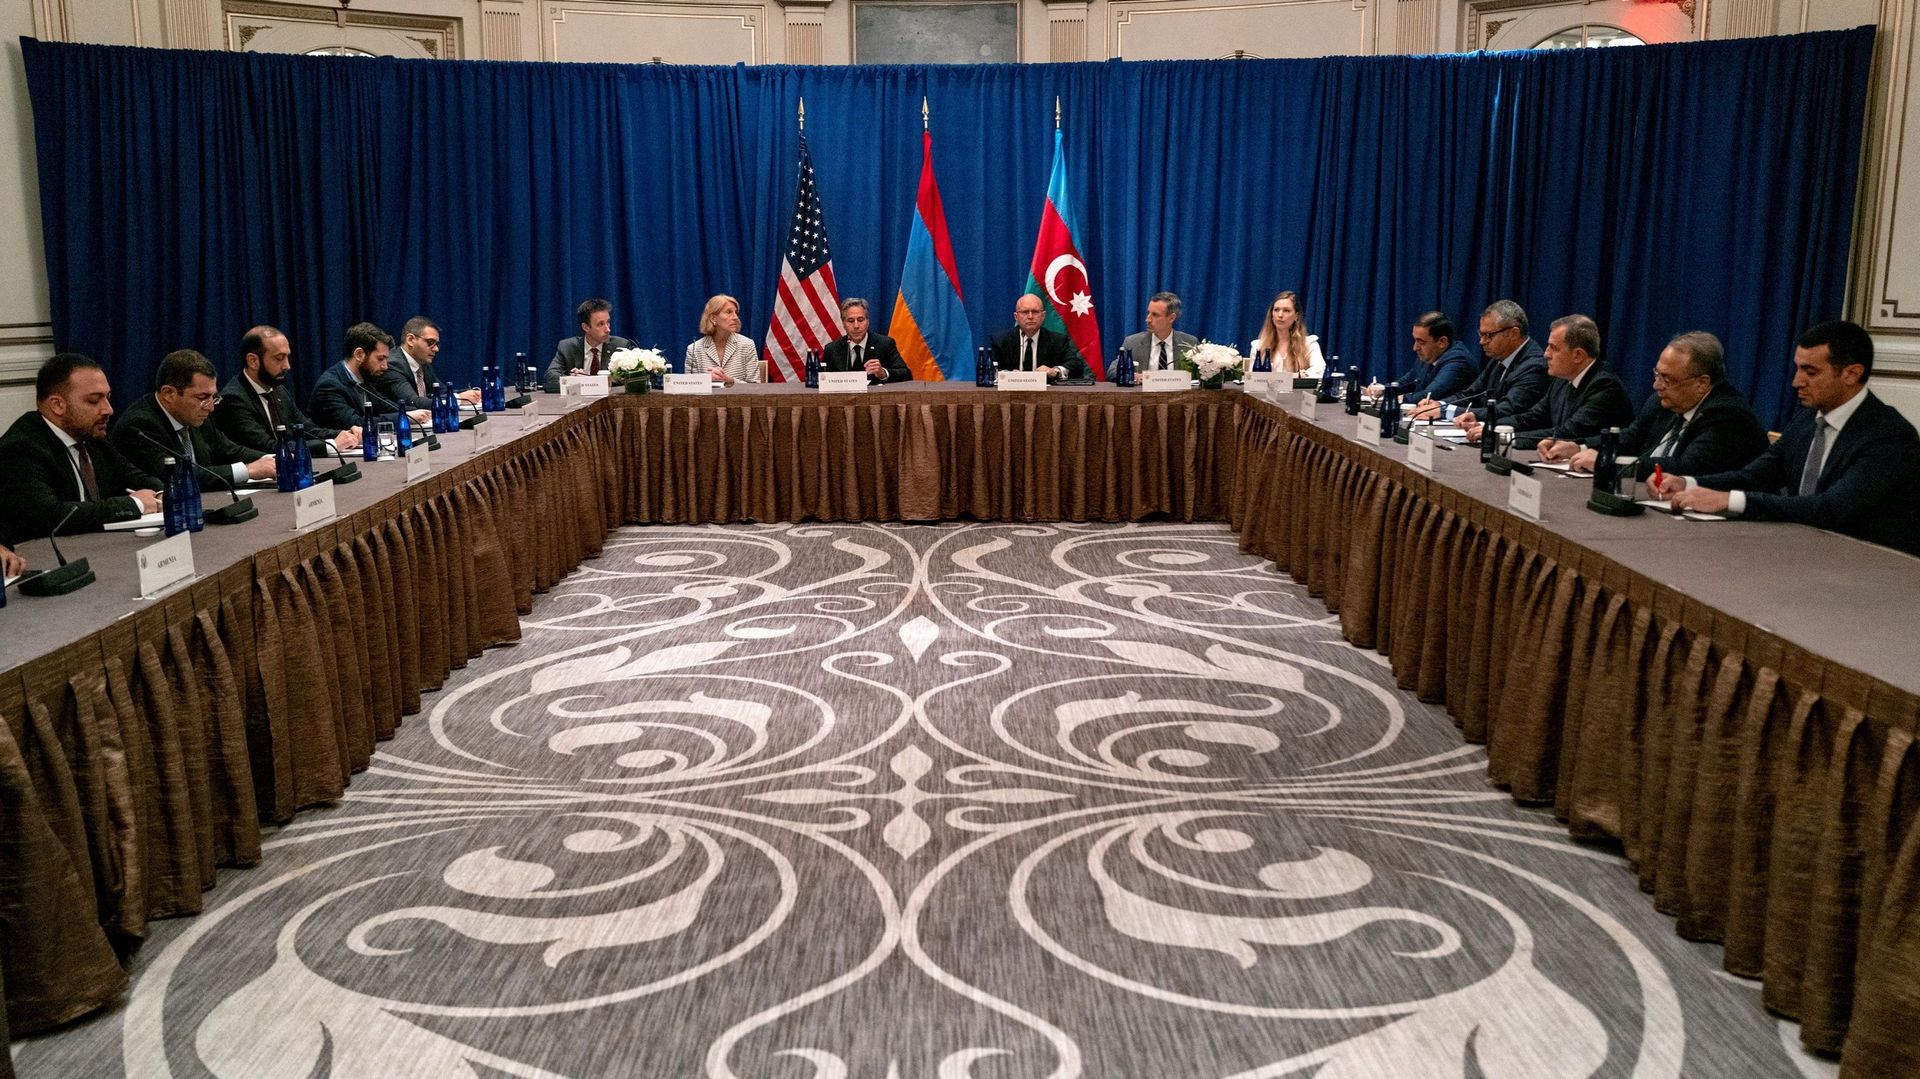 Le secrétaire d’État américain Antony Blinken rencontre une délégation arménienne comprenant le ministre des Affaires étrangères Ararat Mirzoyan et une délégation azerbaïdjanaise comprenant le ministre azerbaïdjanais des Affaires étrangères Jeyhun Bayram